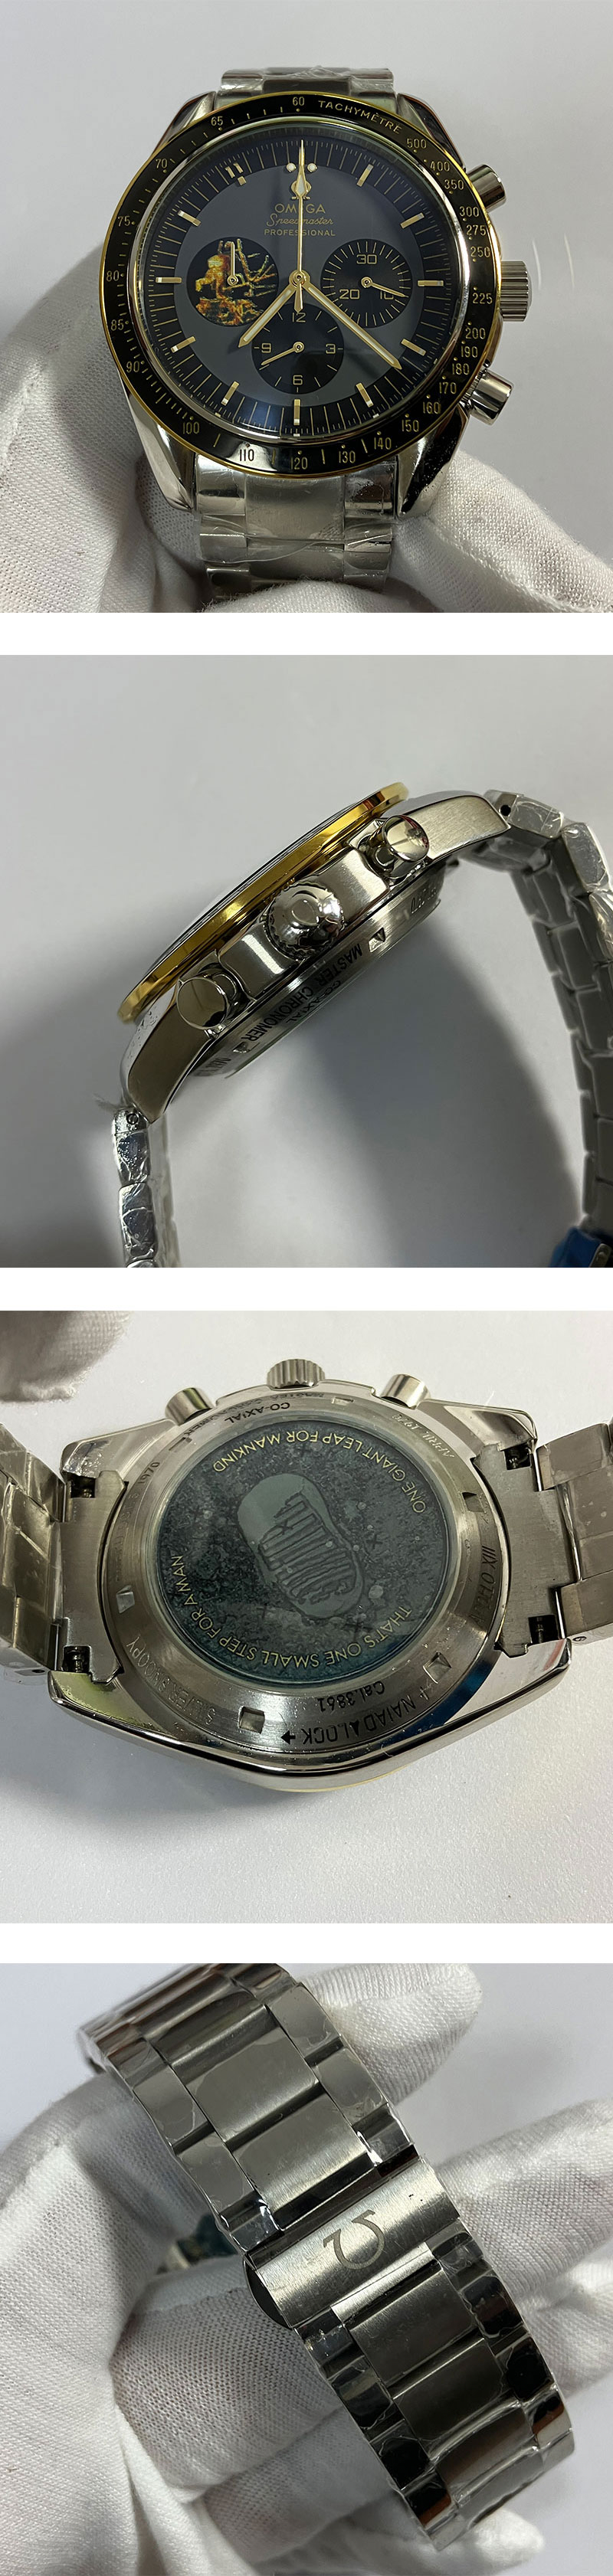 格安腕時計通販 310.20.42.50.01.001 スピードマスターアポロ11号50周年記念モデル 44mm クォーツムーブメント搭載！